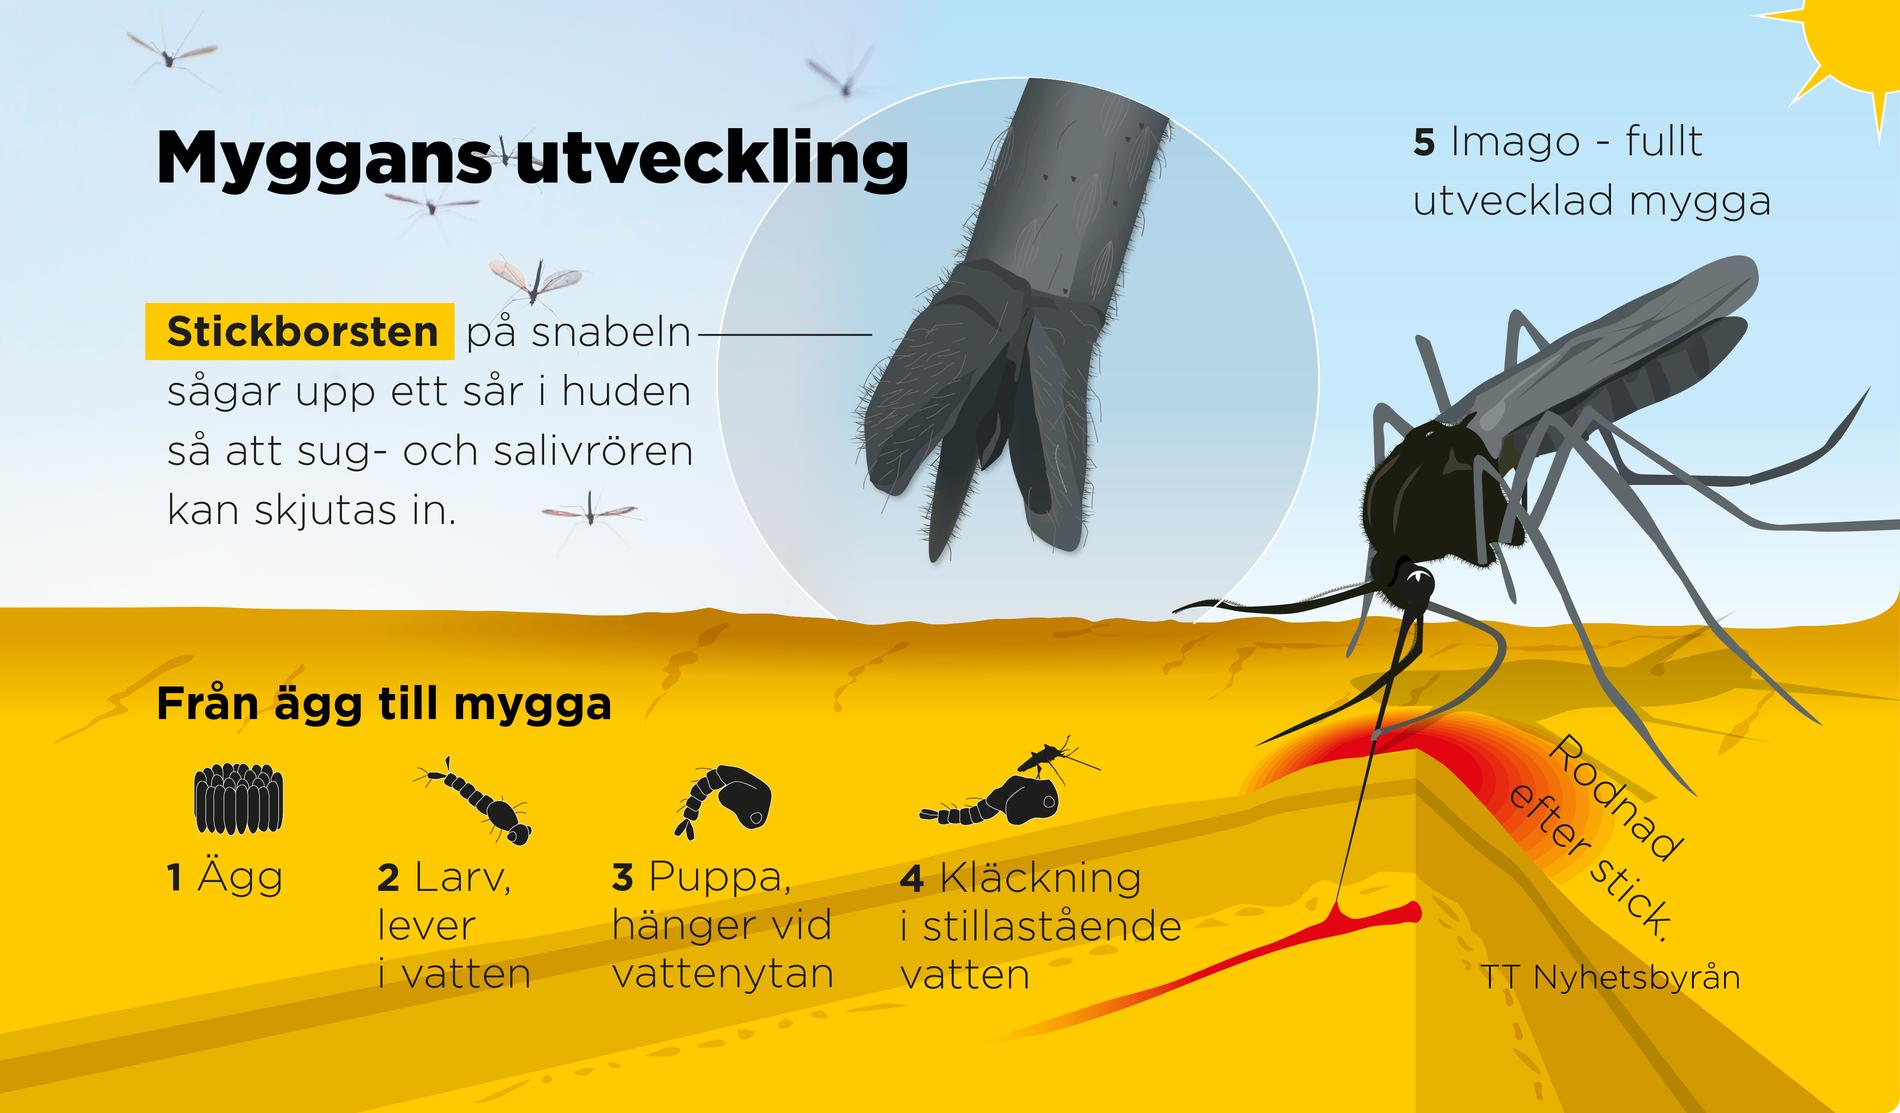 Myggor som trivs vid gravstenar och i barnleksaker väntas bli vanligare i Sverige.